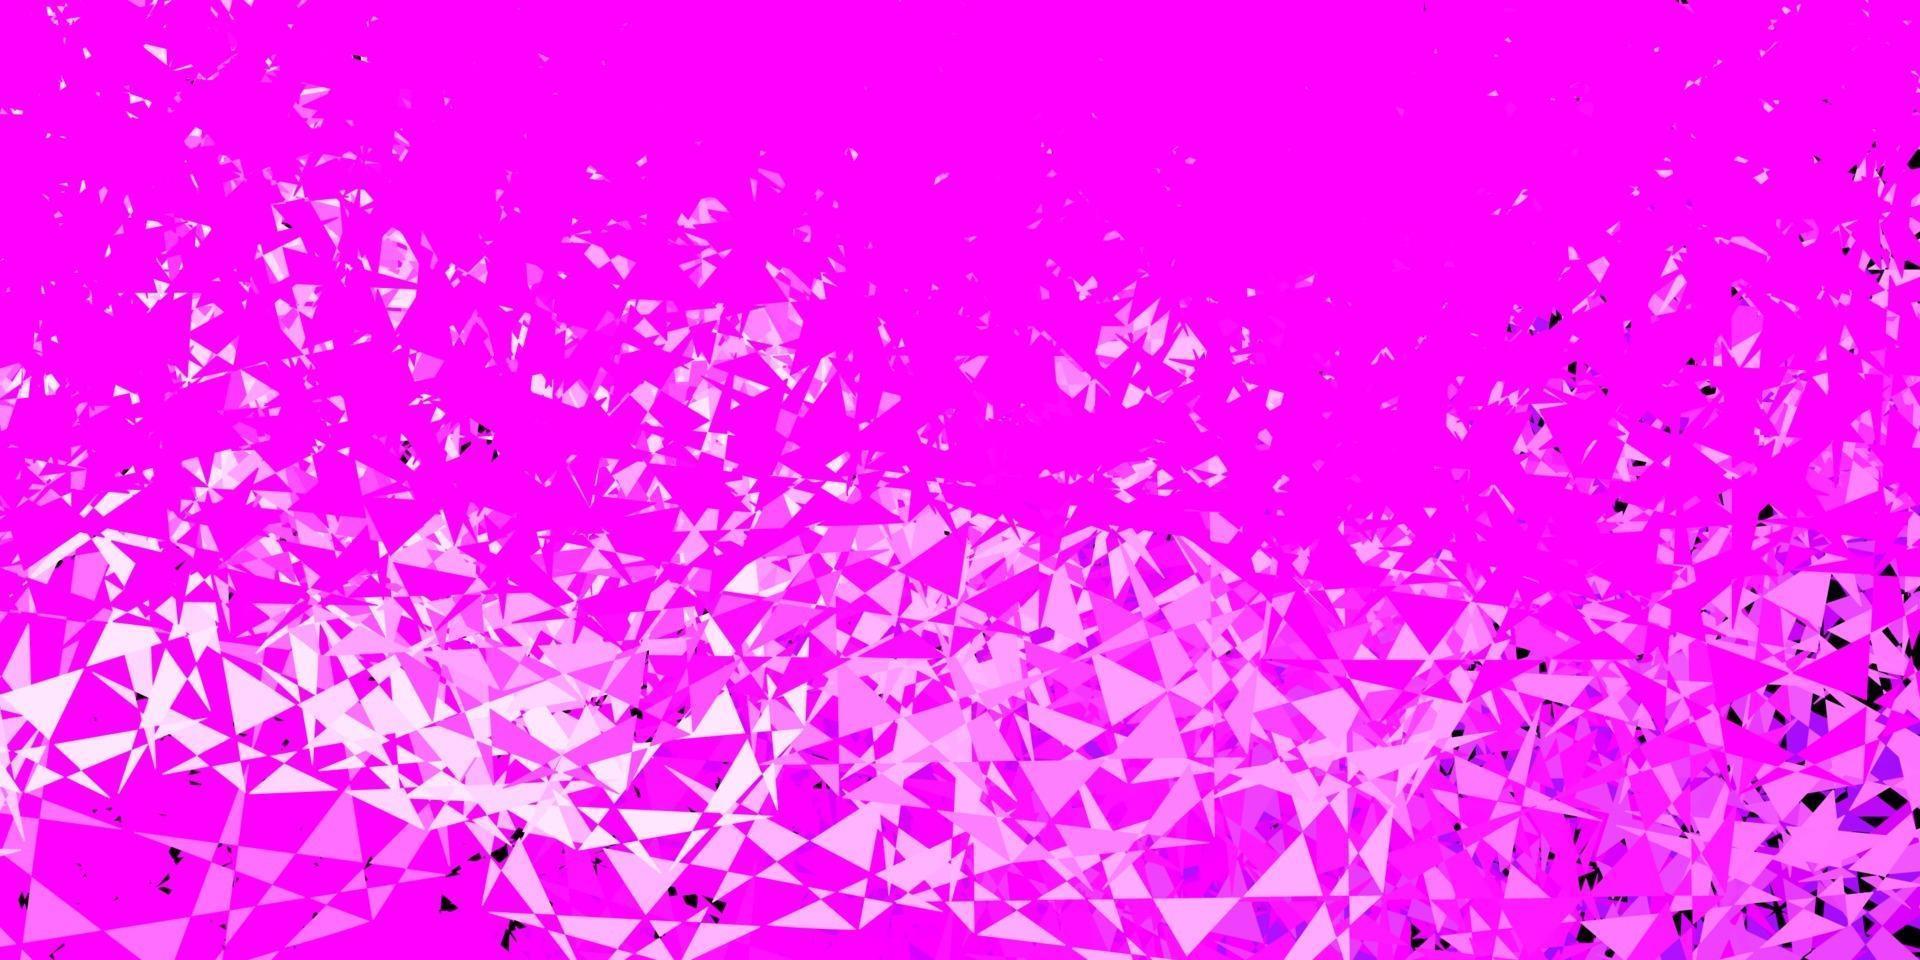 modelo de vetor roxo, rosa claro com formas de triângulo.